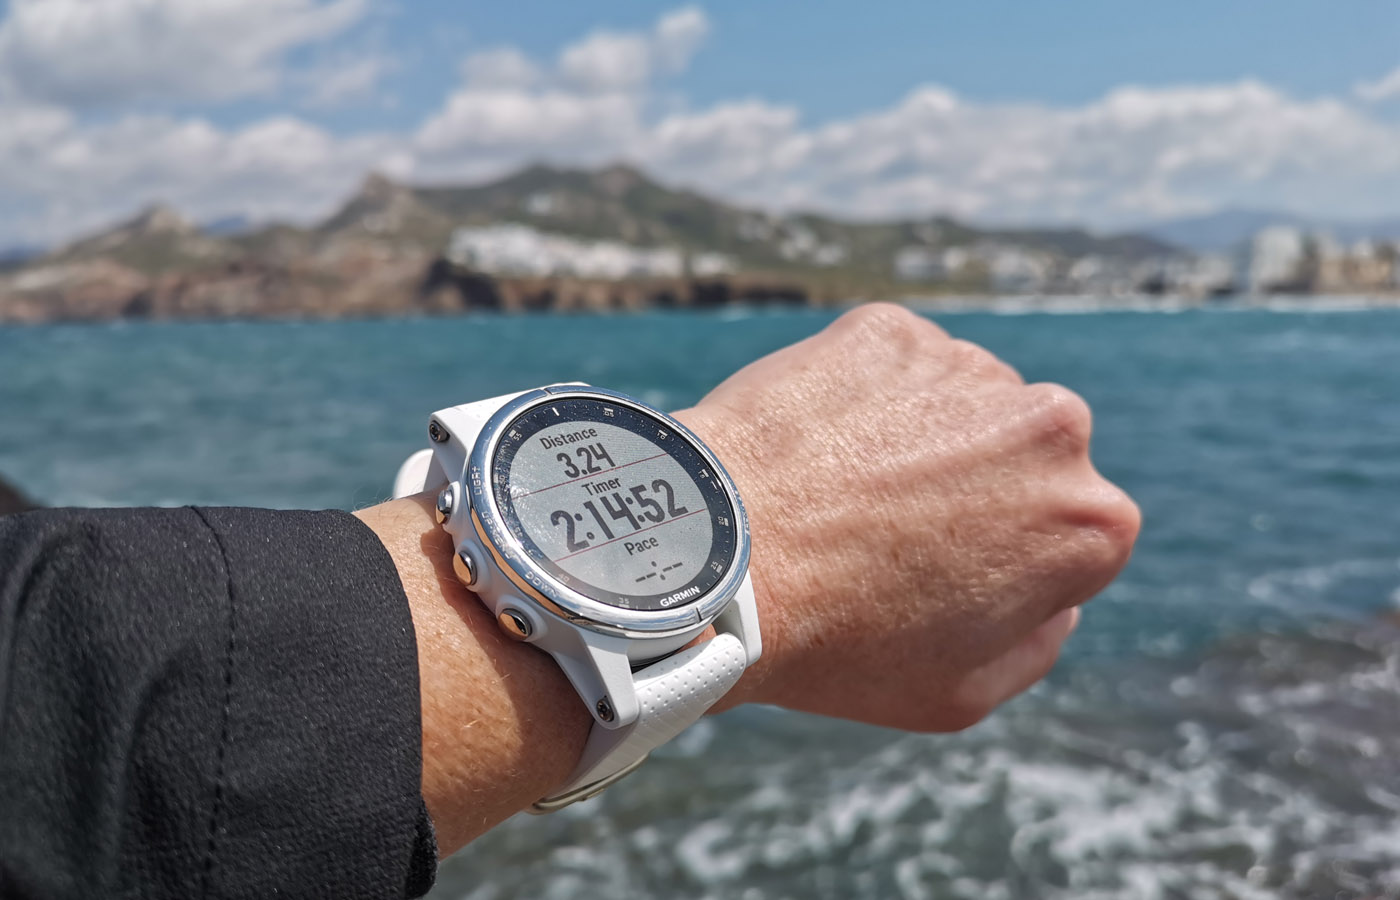 Garmin Fenix 5S Plus Smartwatch